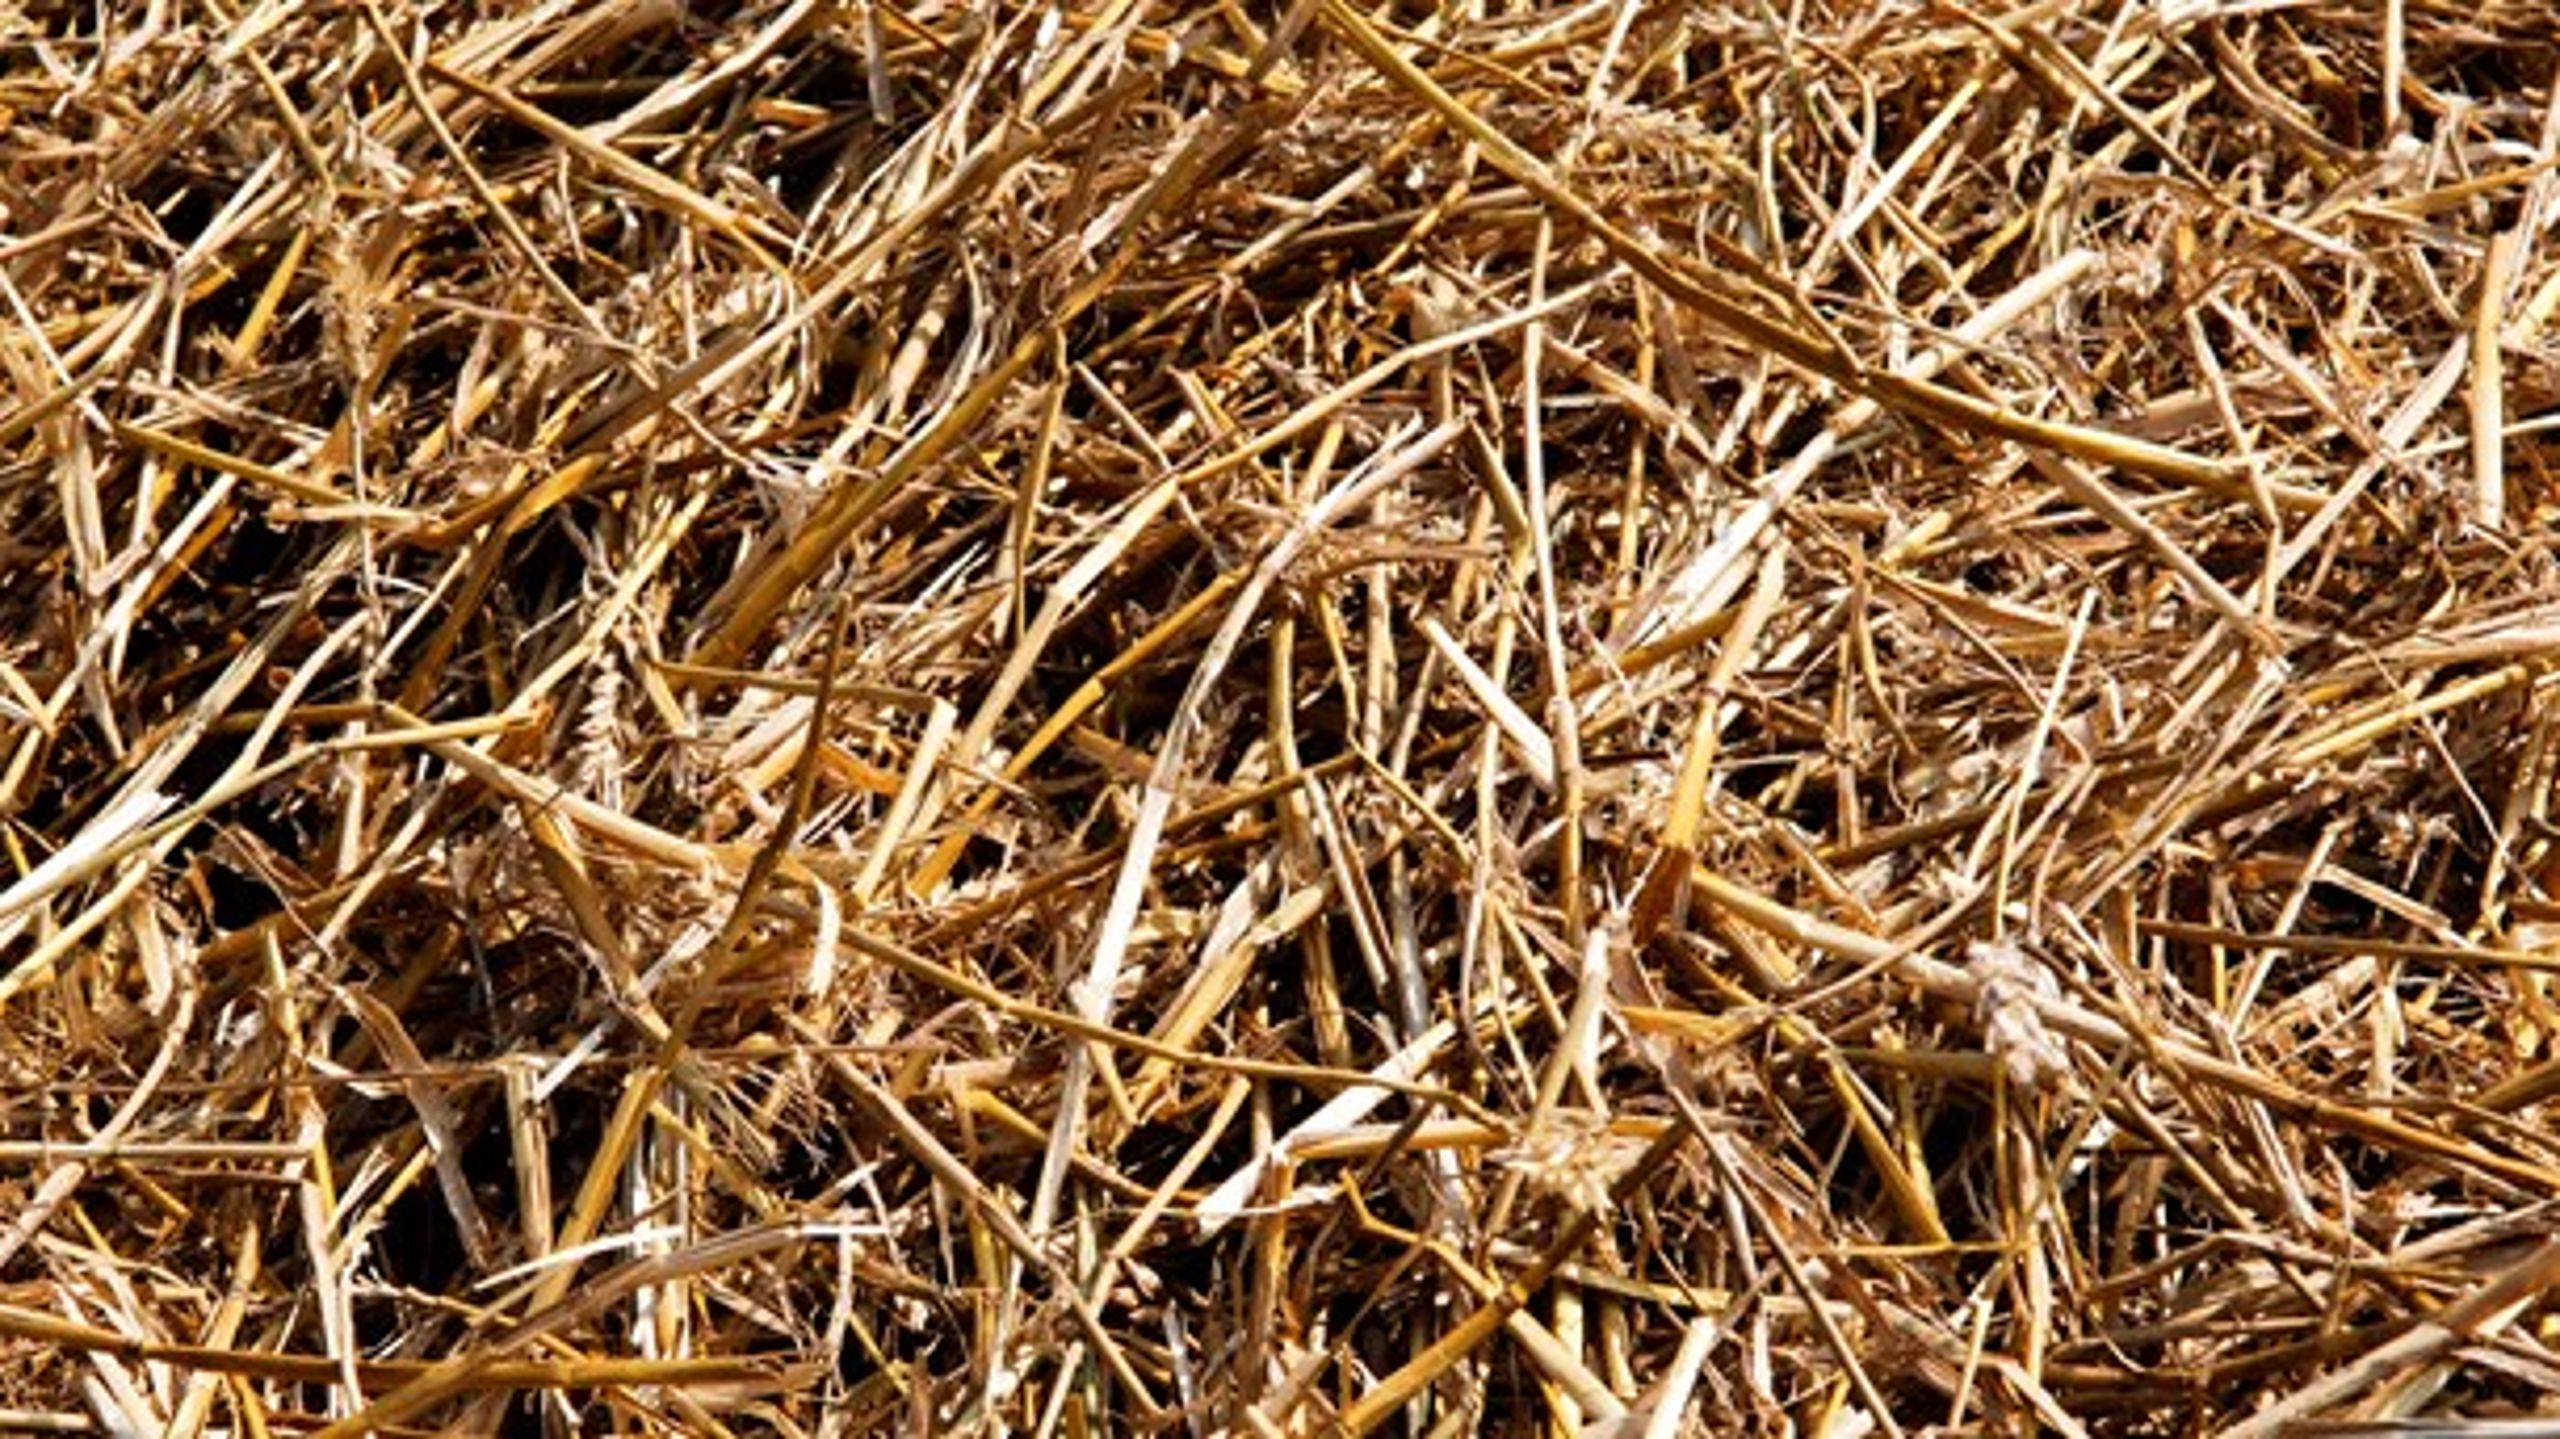 Dansk biomasse produceres og anvendes på en bæredygtig måde i Danmark.